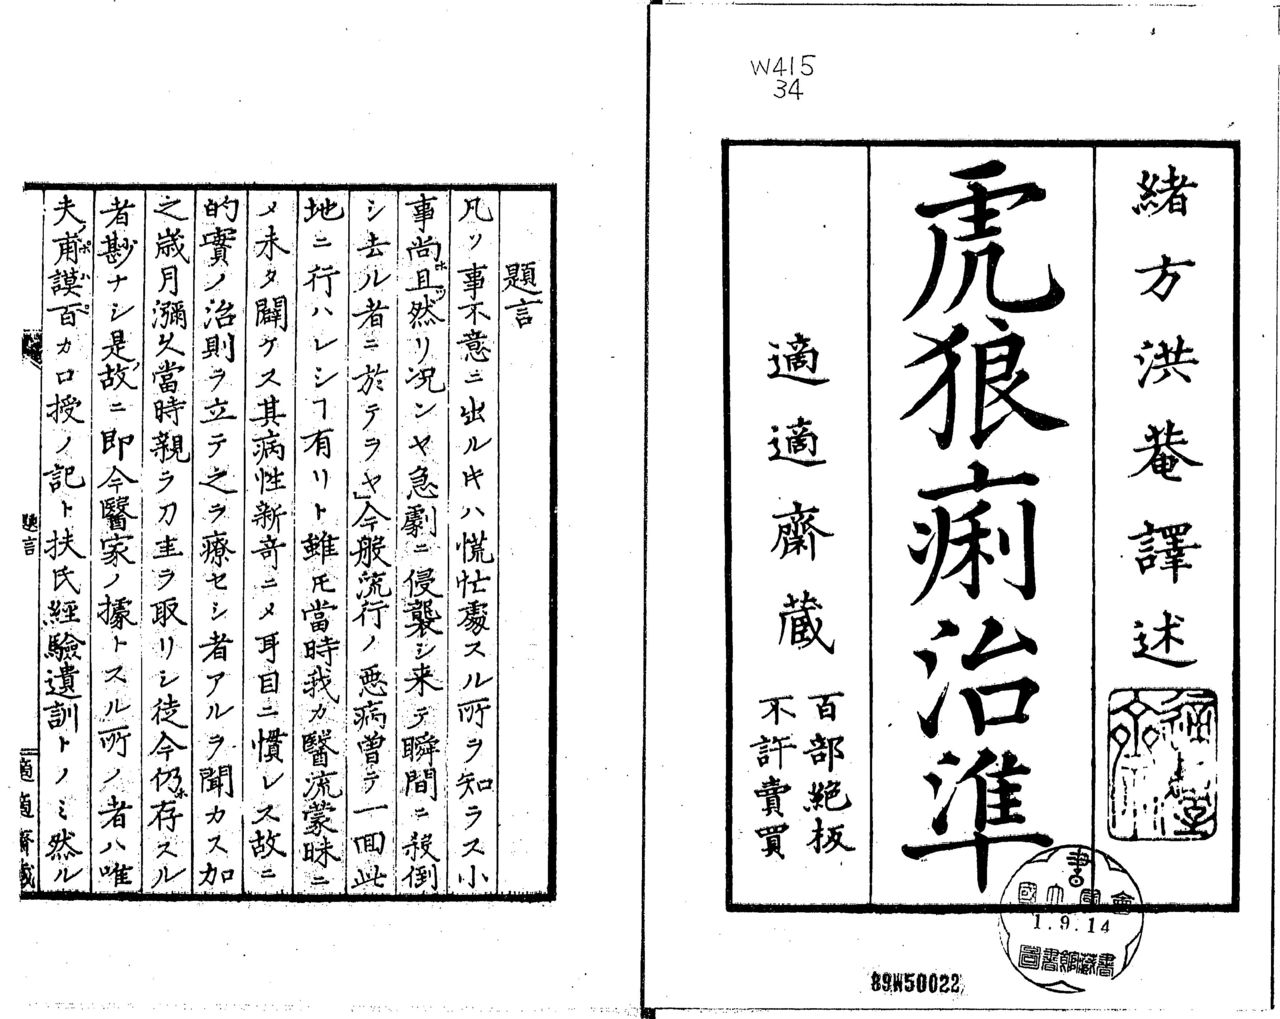 Korori Chijun (« Soigner le Korori »), l’un des trois ouvrages de médecine occidentale publiés par Ogata Kôan (Bibliothèque de la Diète)